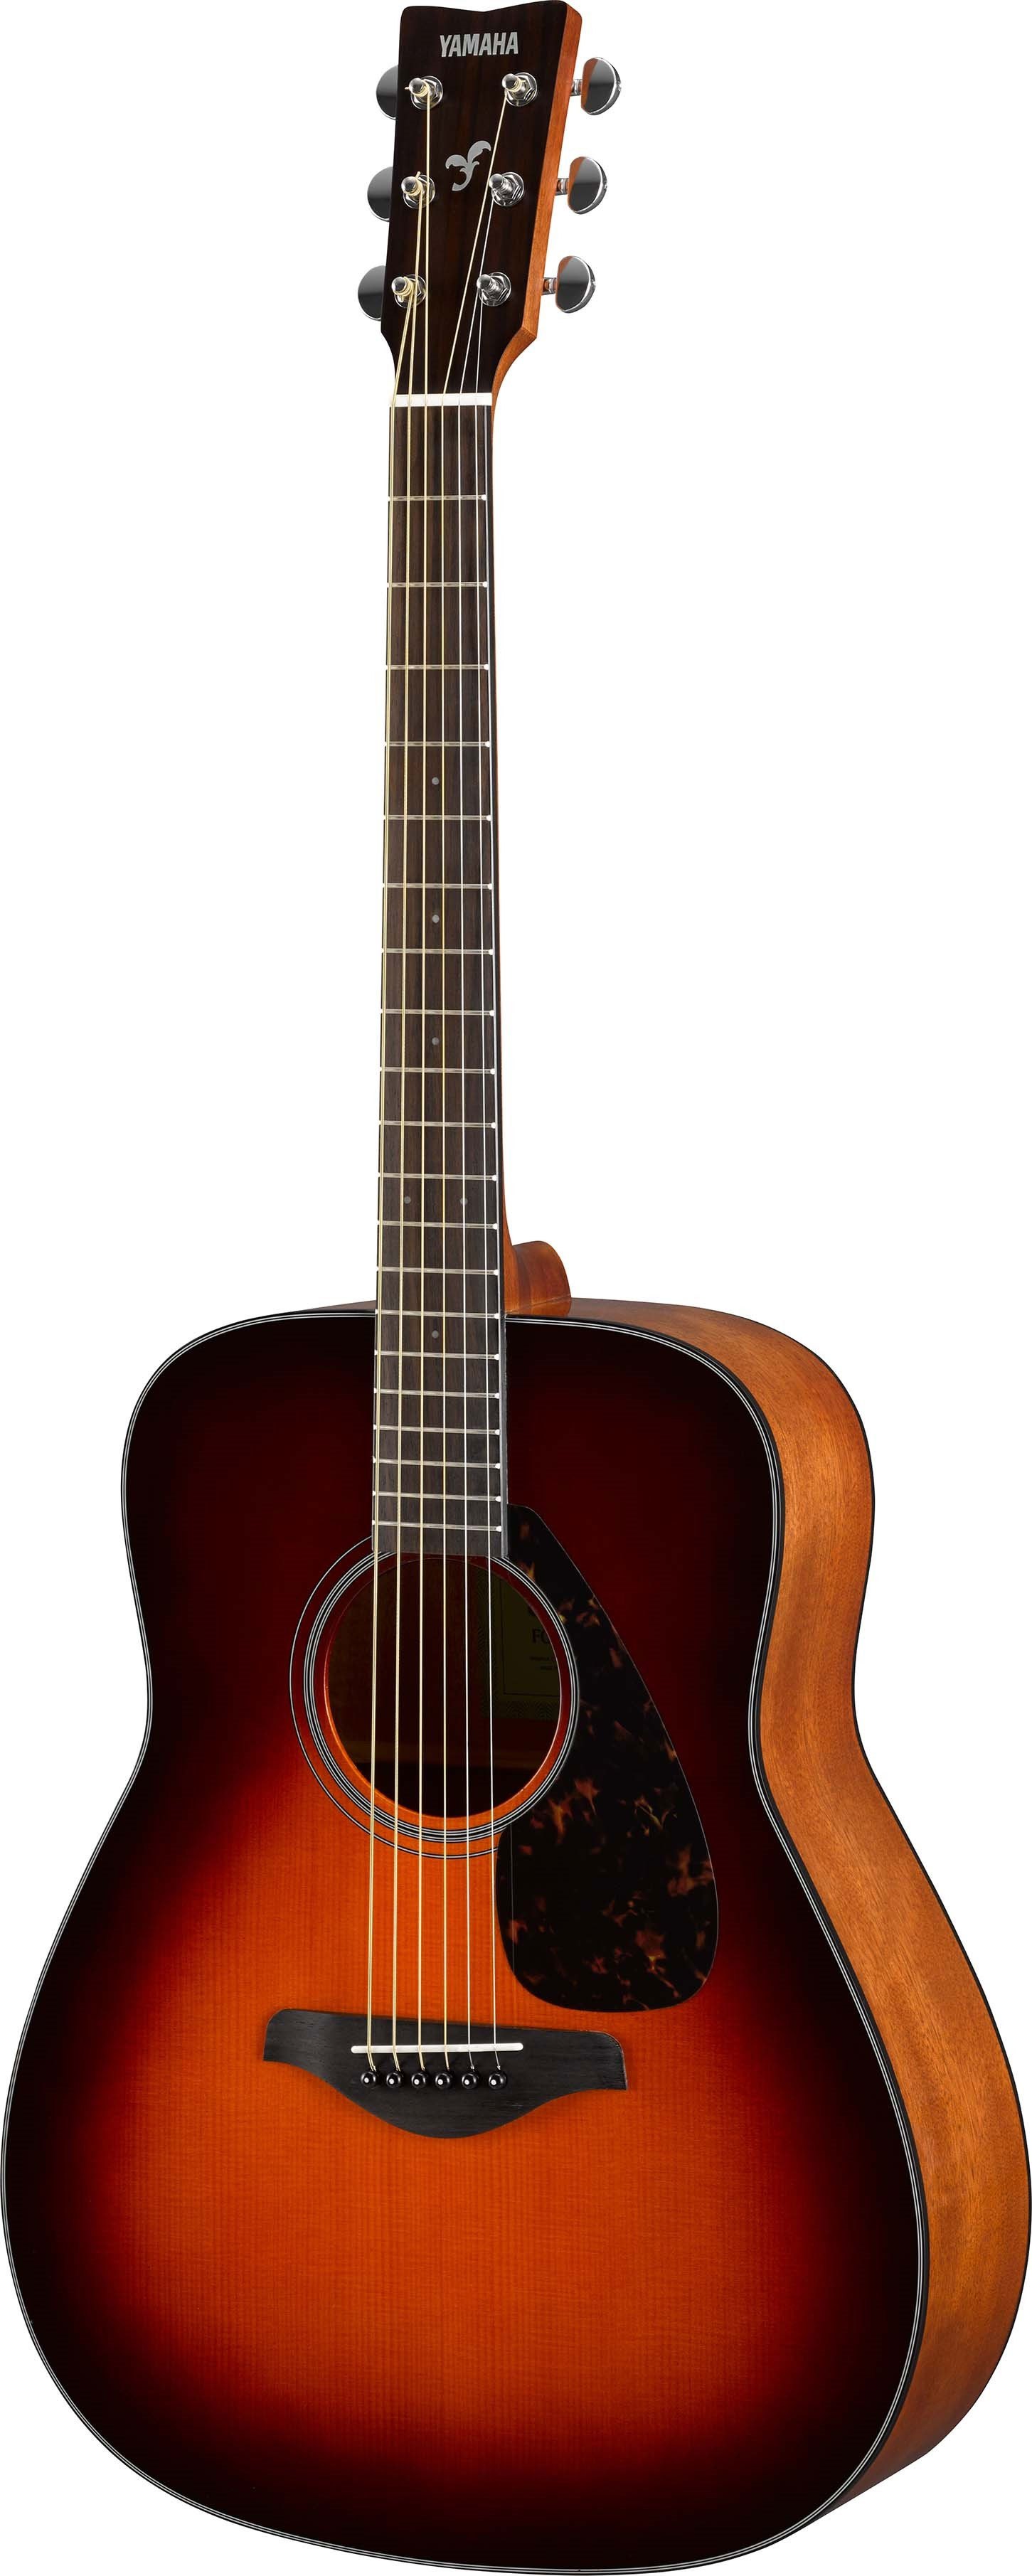 Đàn Guitar Acoustic Yamaha FG800